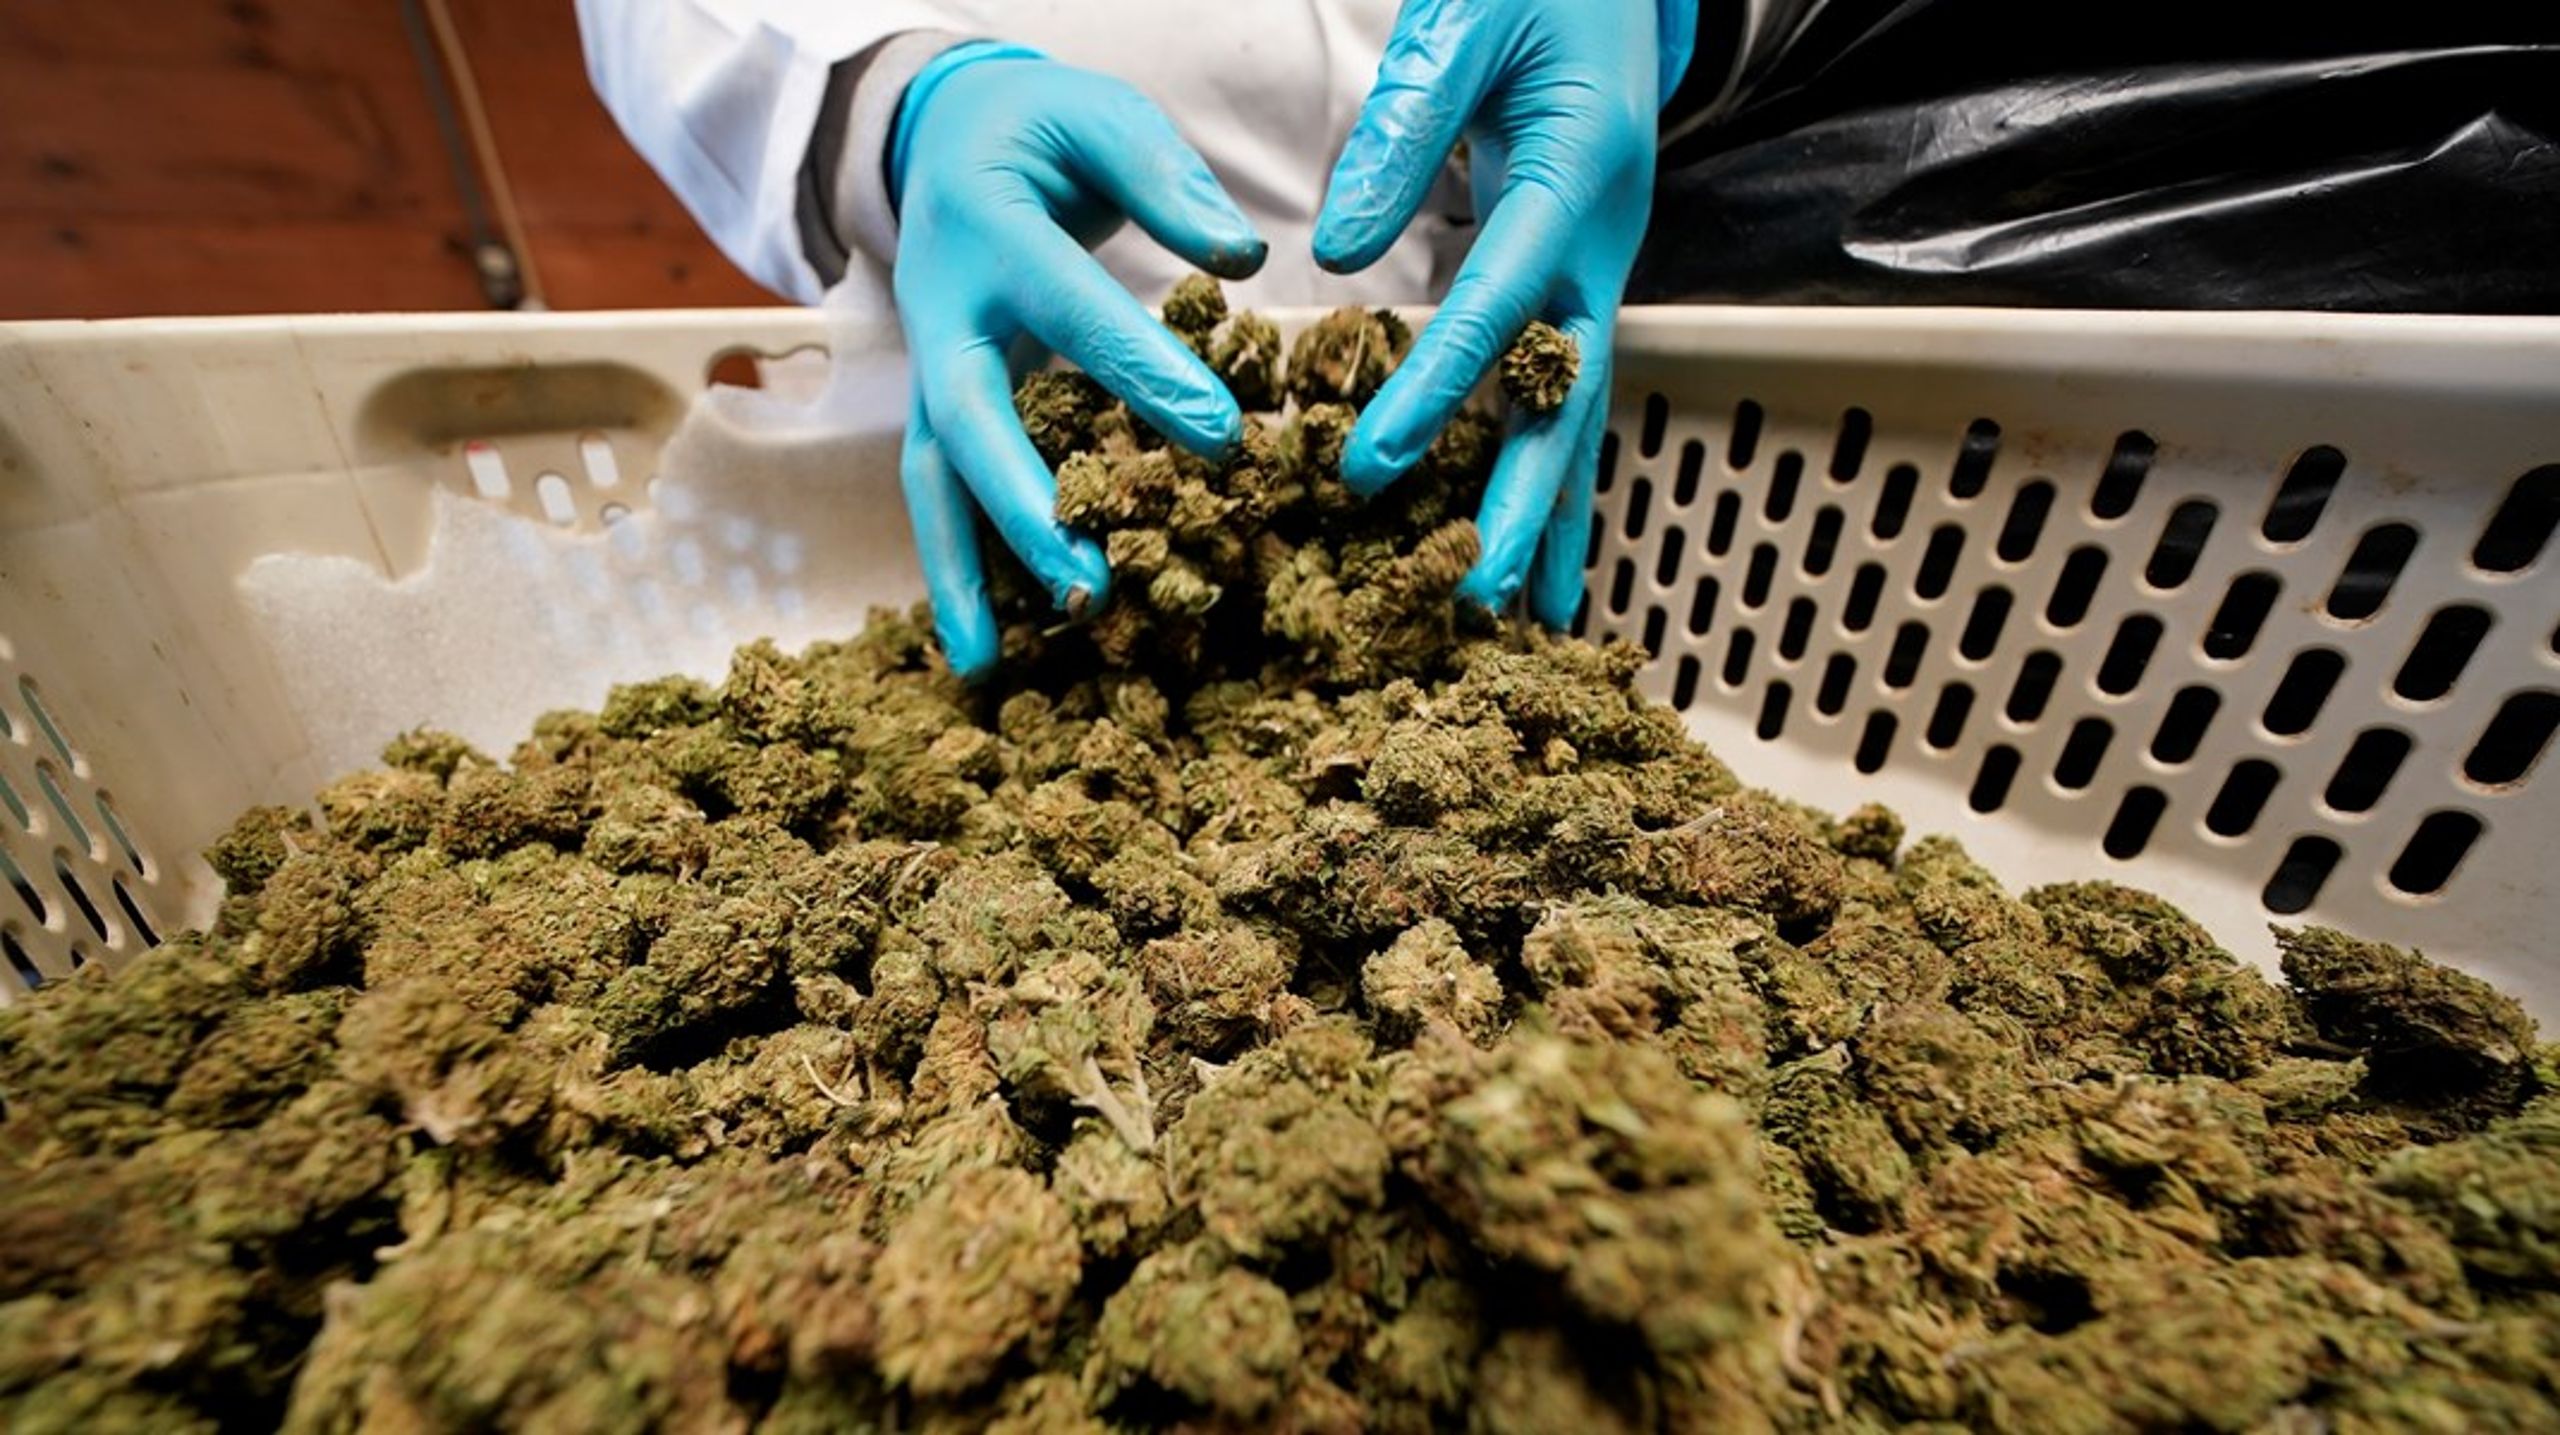 Cannabis var den mest förekommande drogen enligt en ny rapport. Från 2016 och framåt gav mer än 2 procent av testerna ett positivt utslag för cannabis.